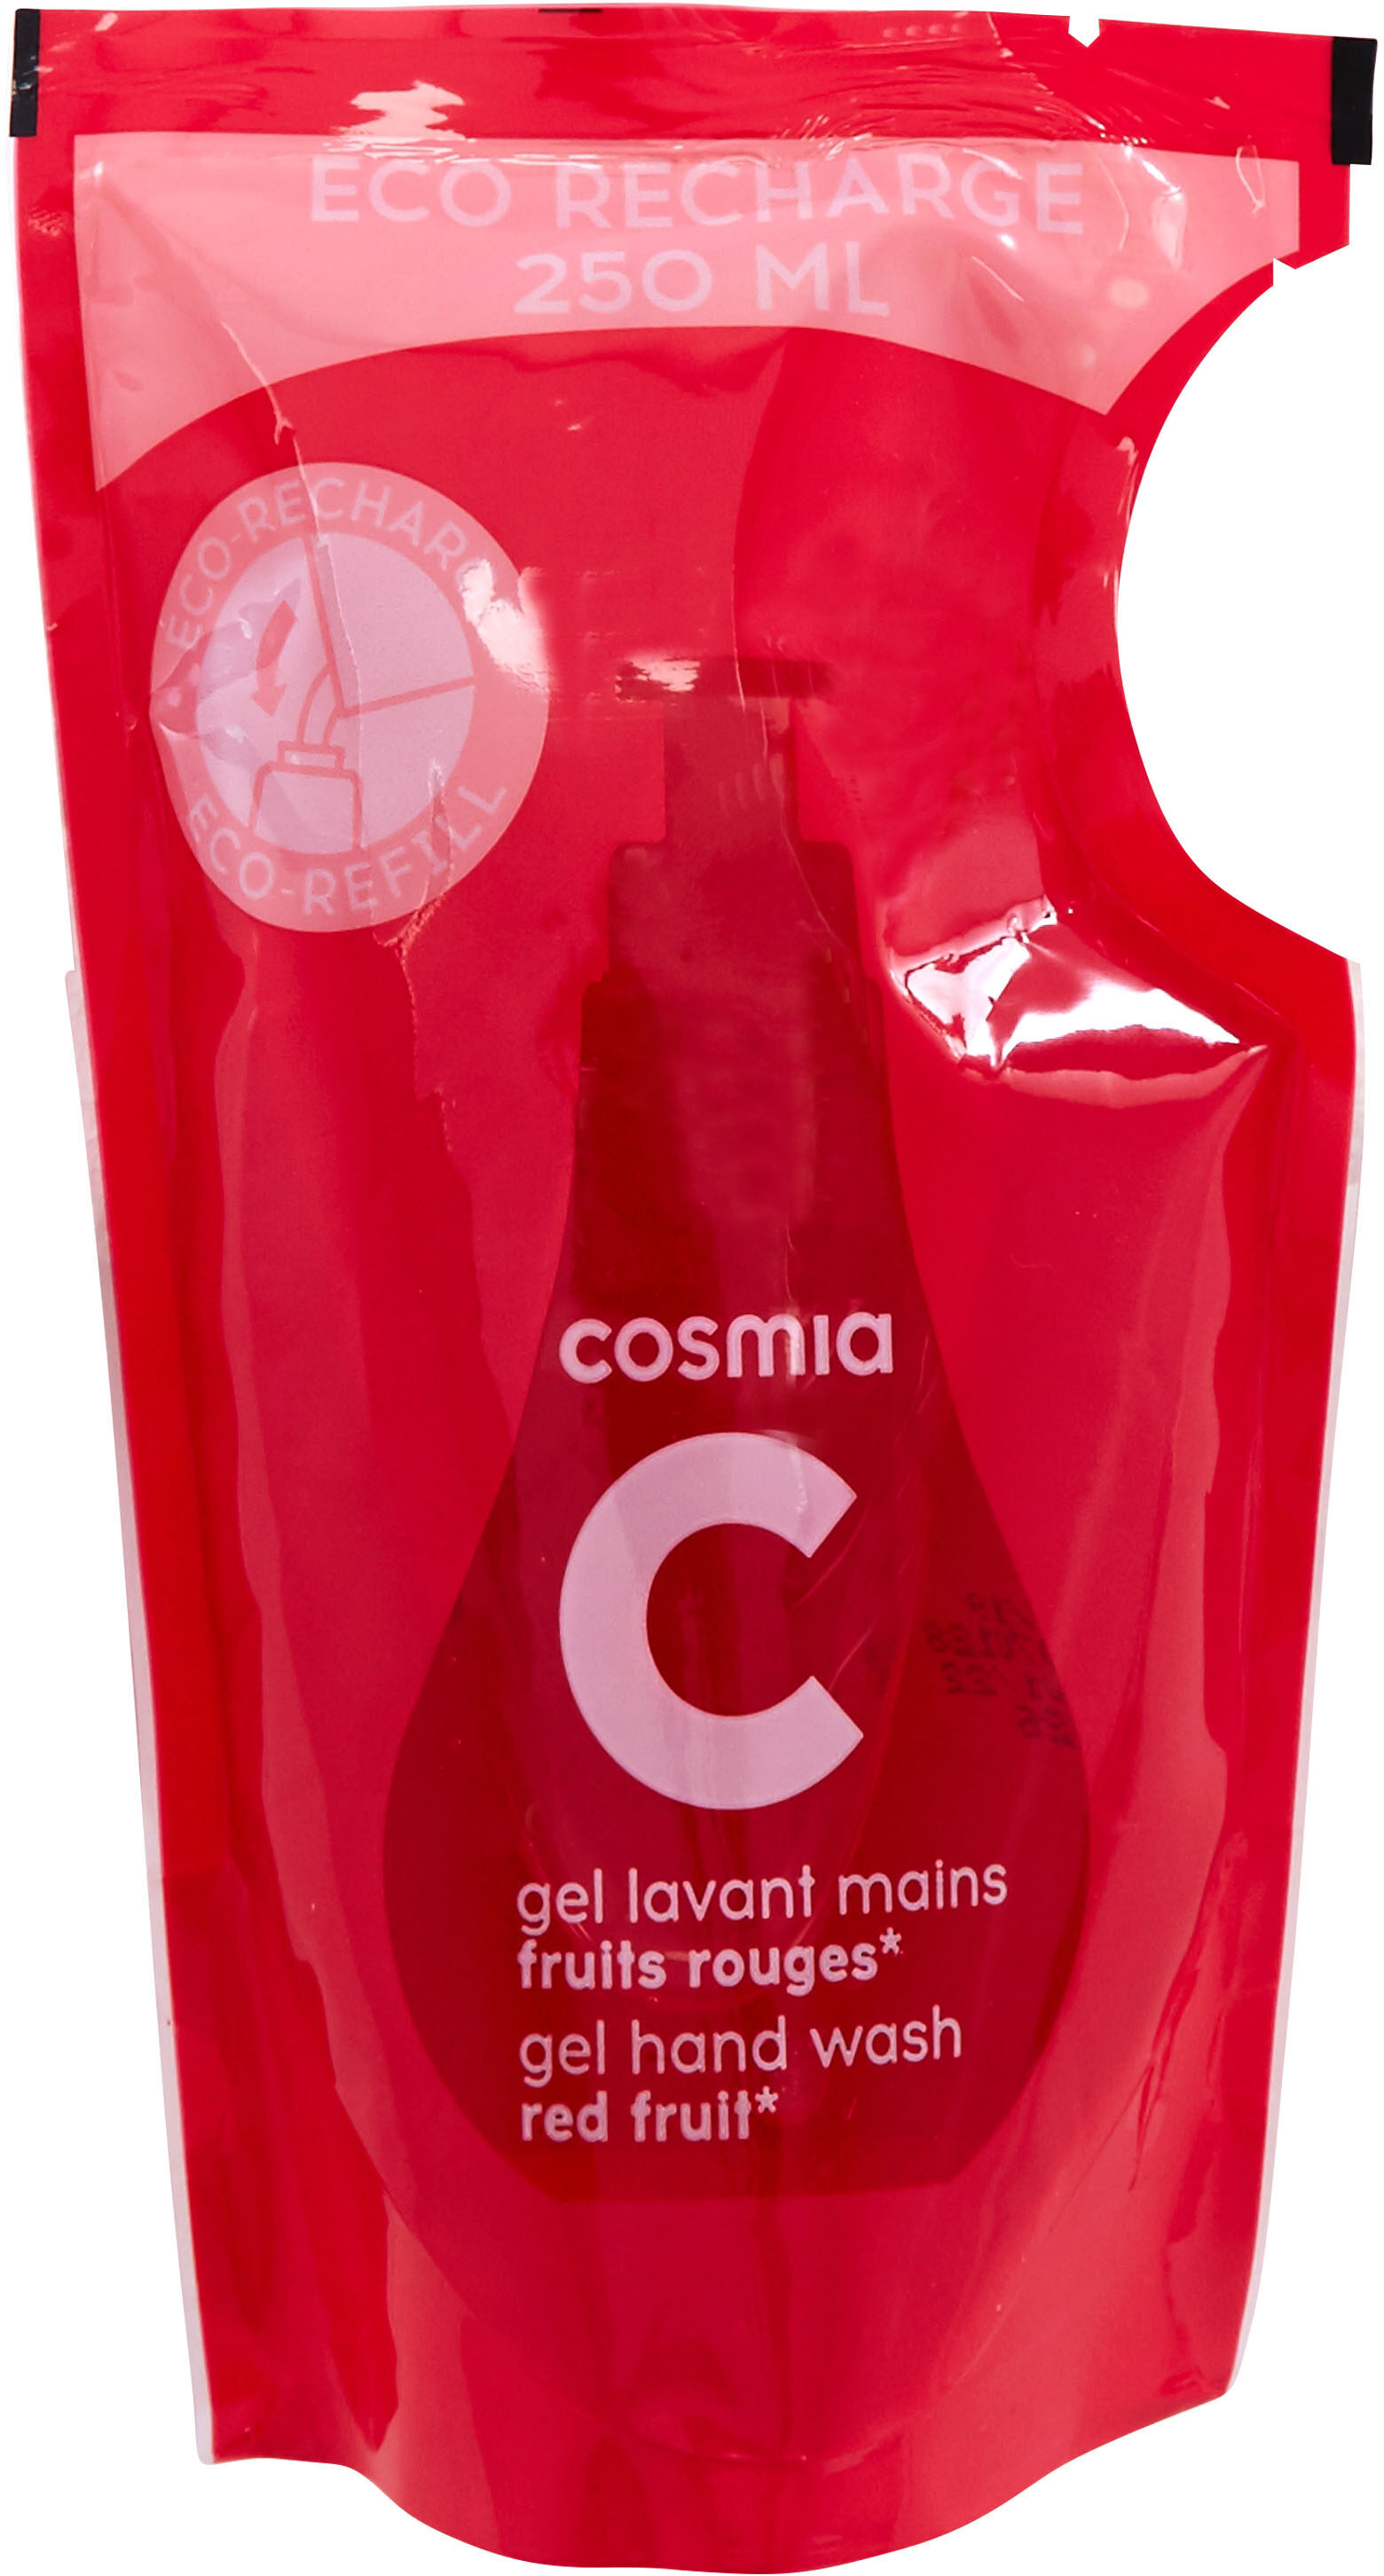 Cosmia - éco-recharge gel lavant mains - parfum fruits rouges* - tous types de peaux - 250ml - 製品 - fr